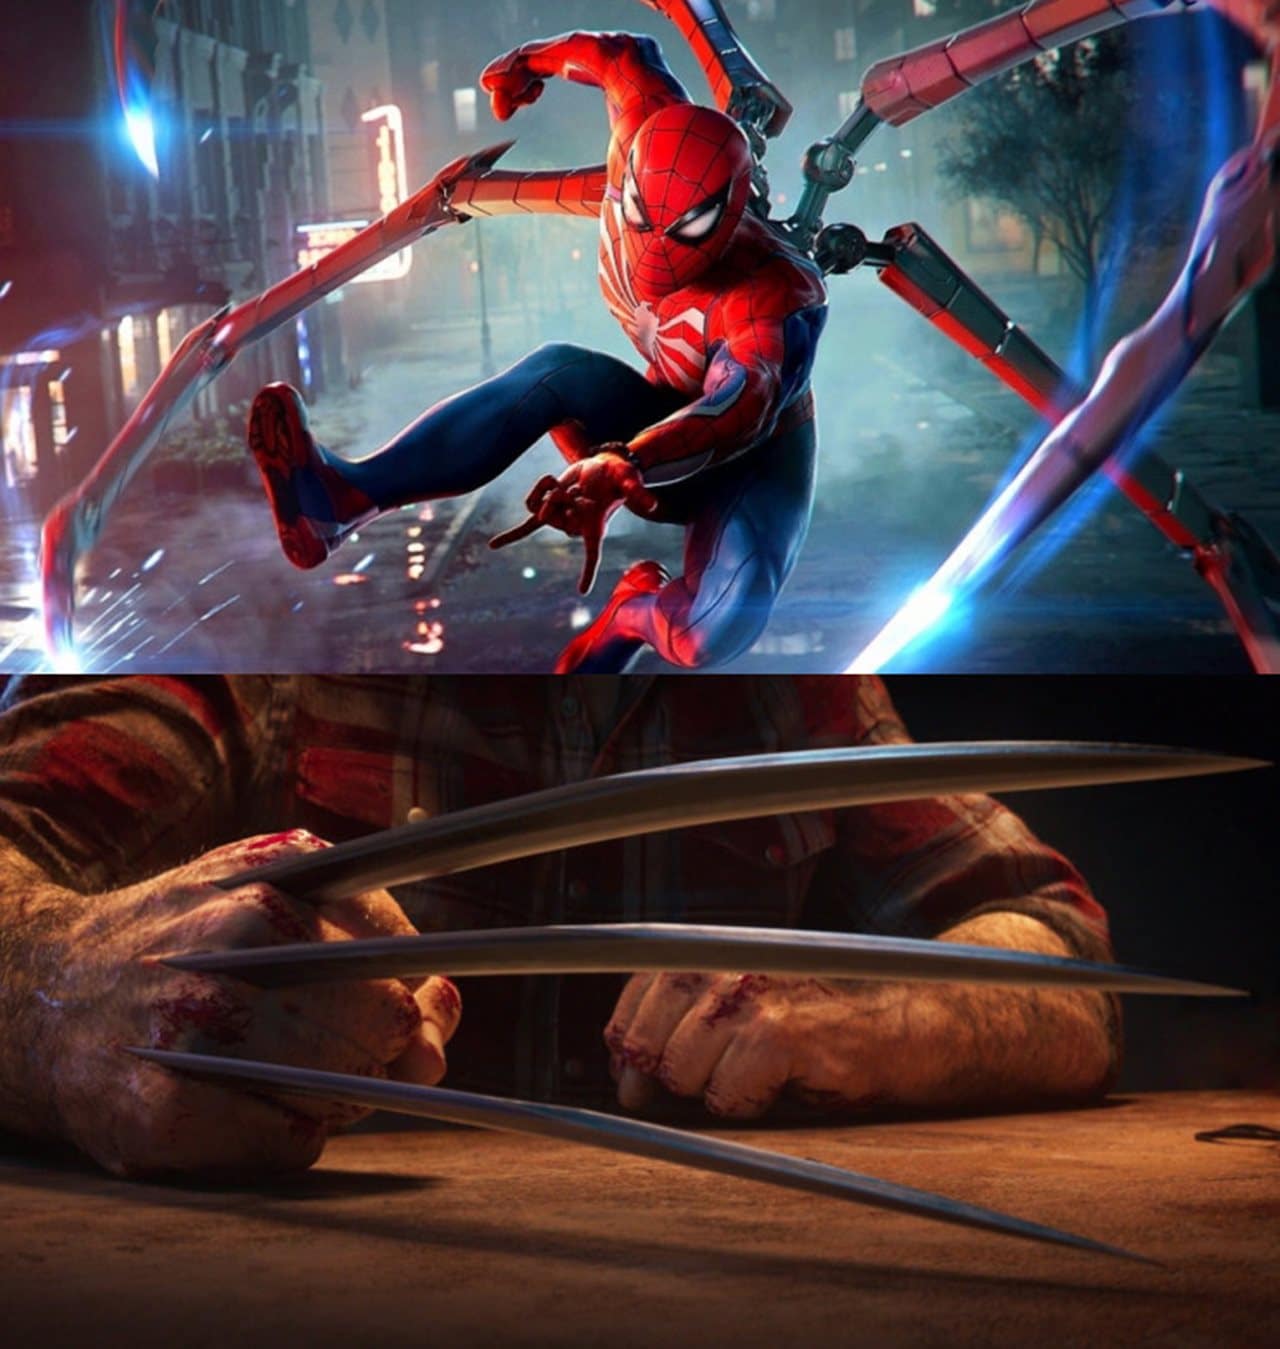 Marvel's Wolverine e Marvel's Spider-Man, ambos nesta lista de Jogos de Heróis.